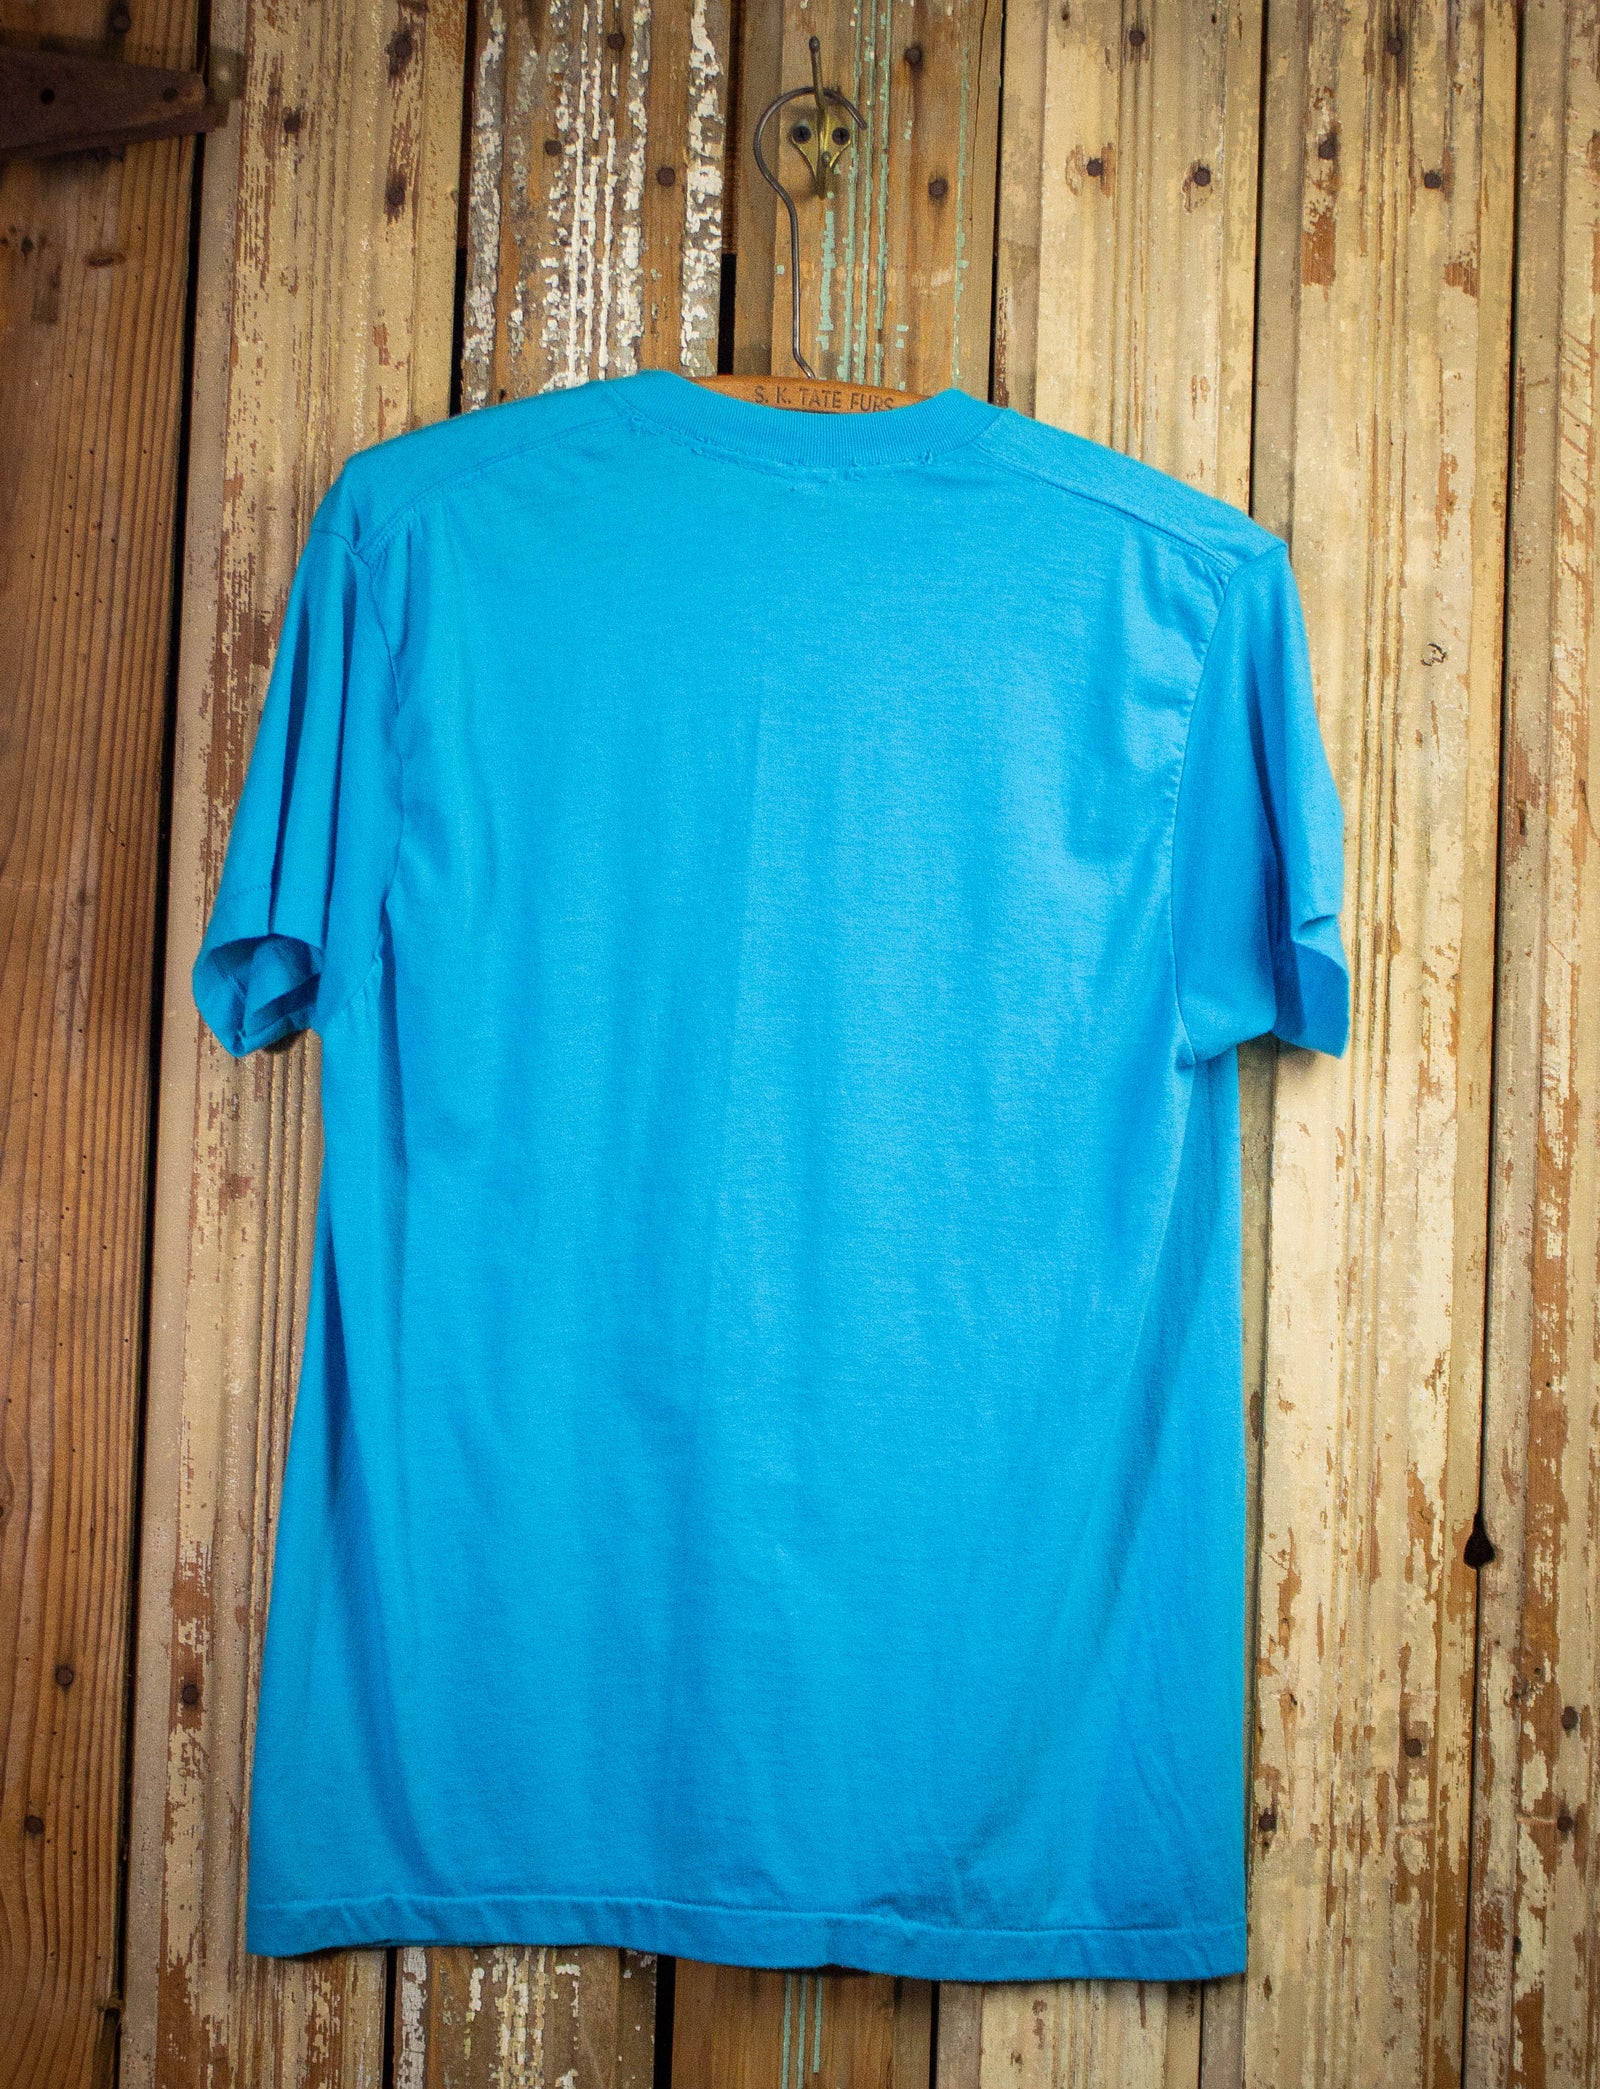 Vintage Top Gun WZYP Graphic T Shirt 80s Blue Medium